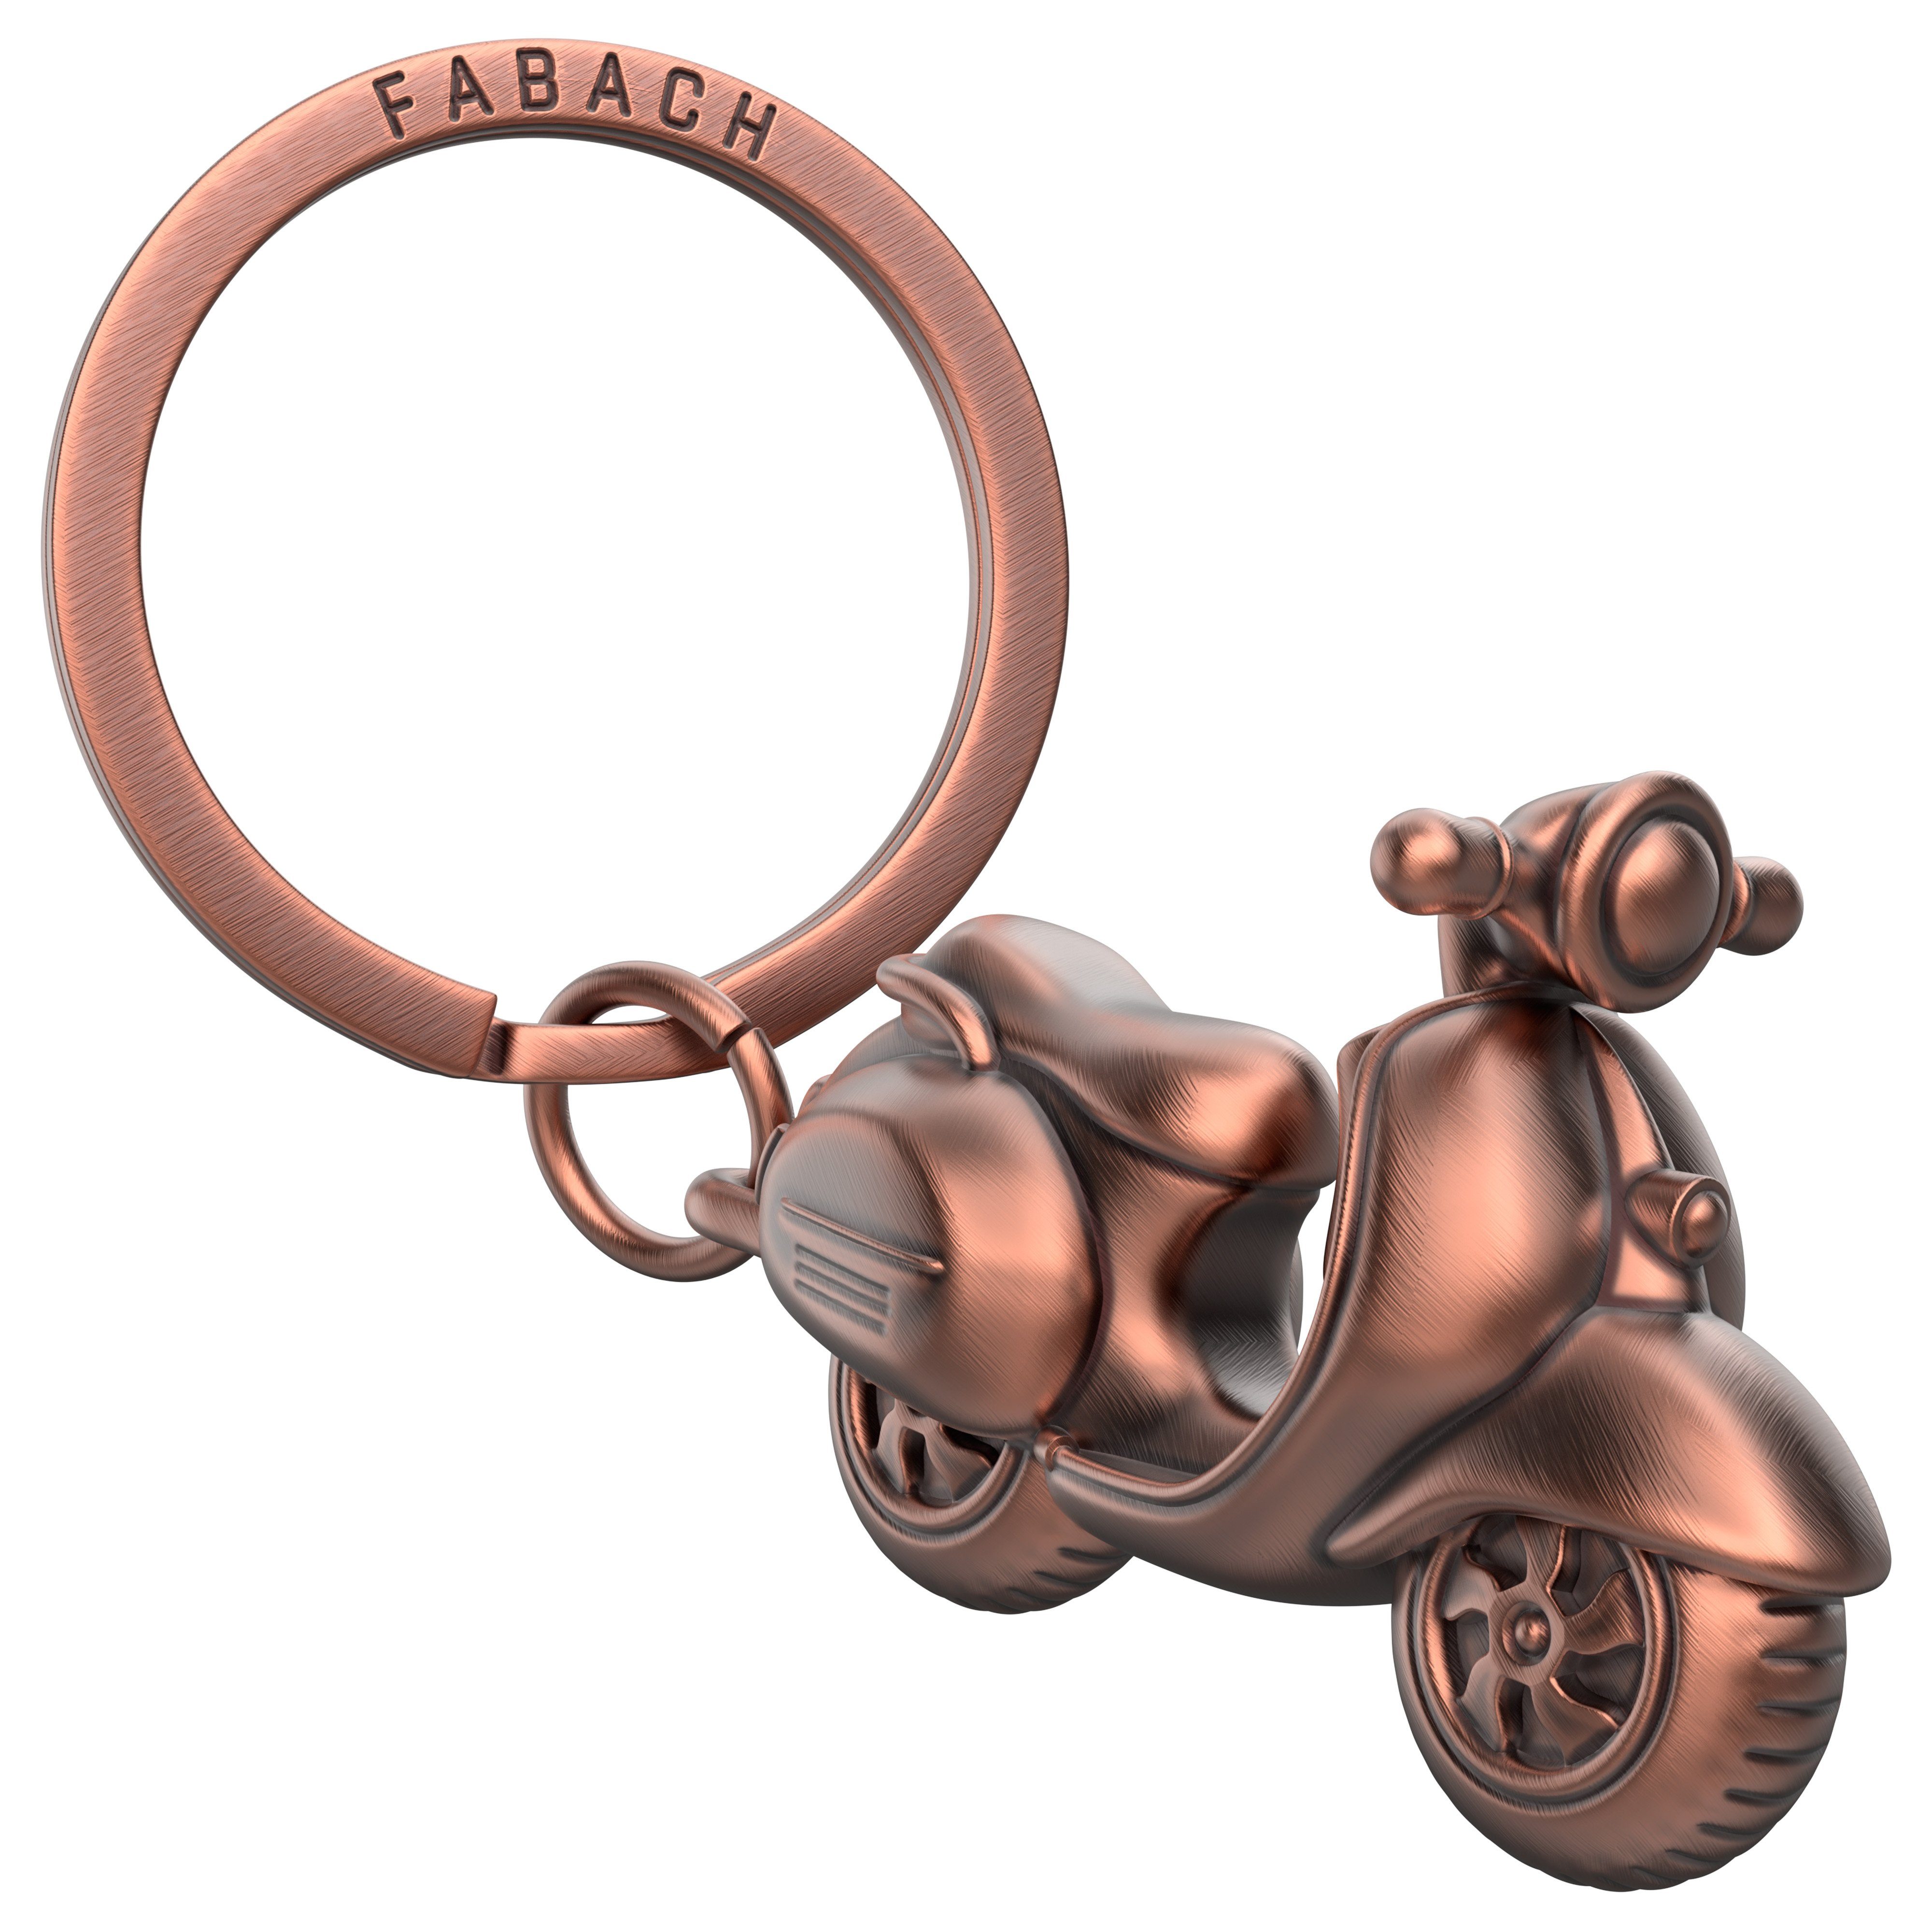 FABACH Schlüsselanhänger "Vespa" - Geschenk für Rollerfahrer und Vespa Fans Antique Roségold